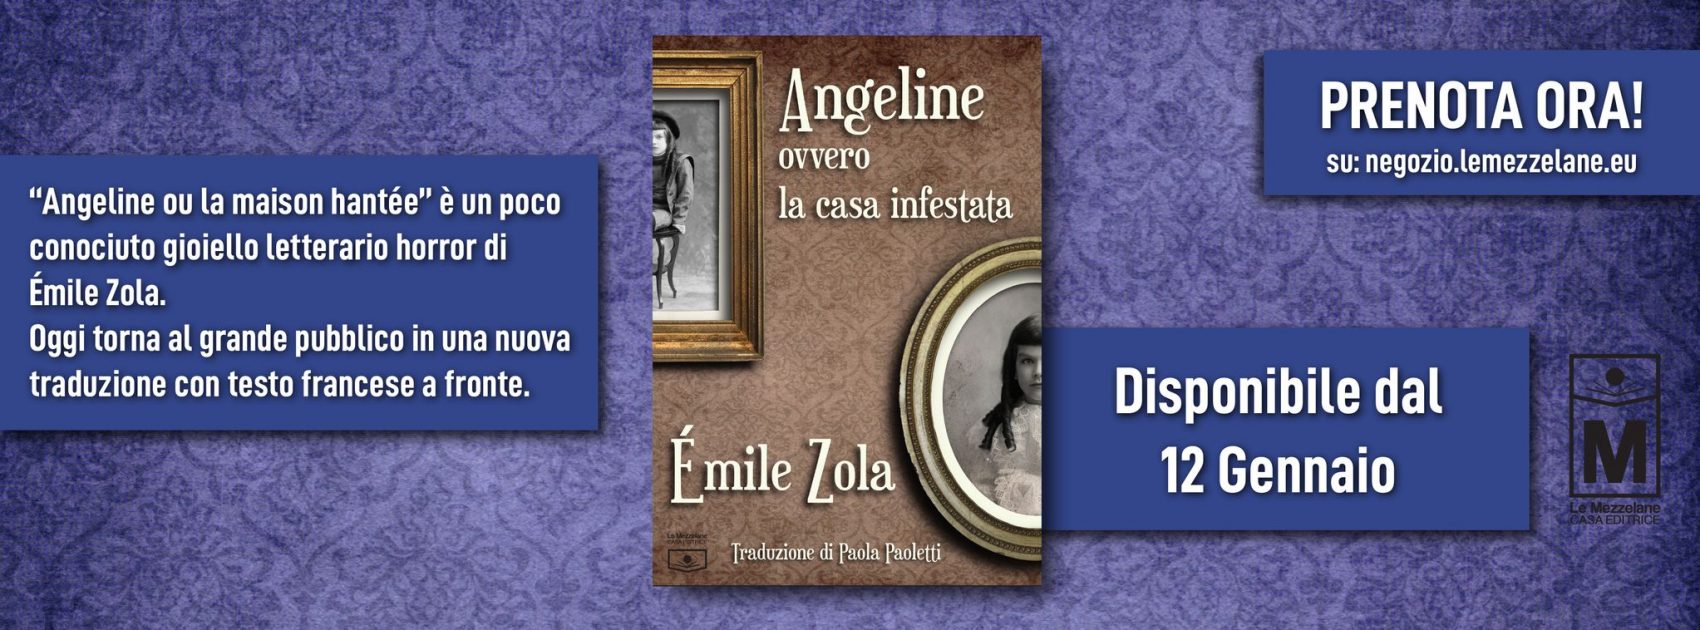 “Angeline ou la maison hantée” è un poco conosciuto gioiello letterario horror di Émile Zola. Oggi torna al grande pubblico in una nuova tradizione con testo francese a fronte.